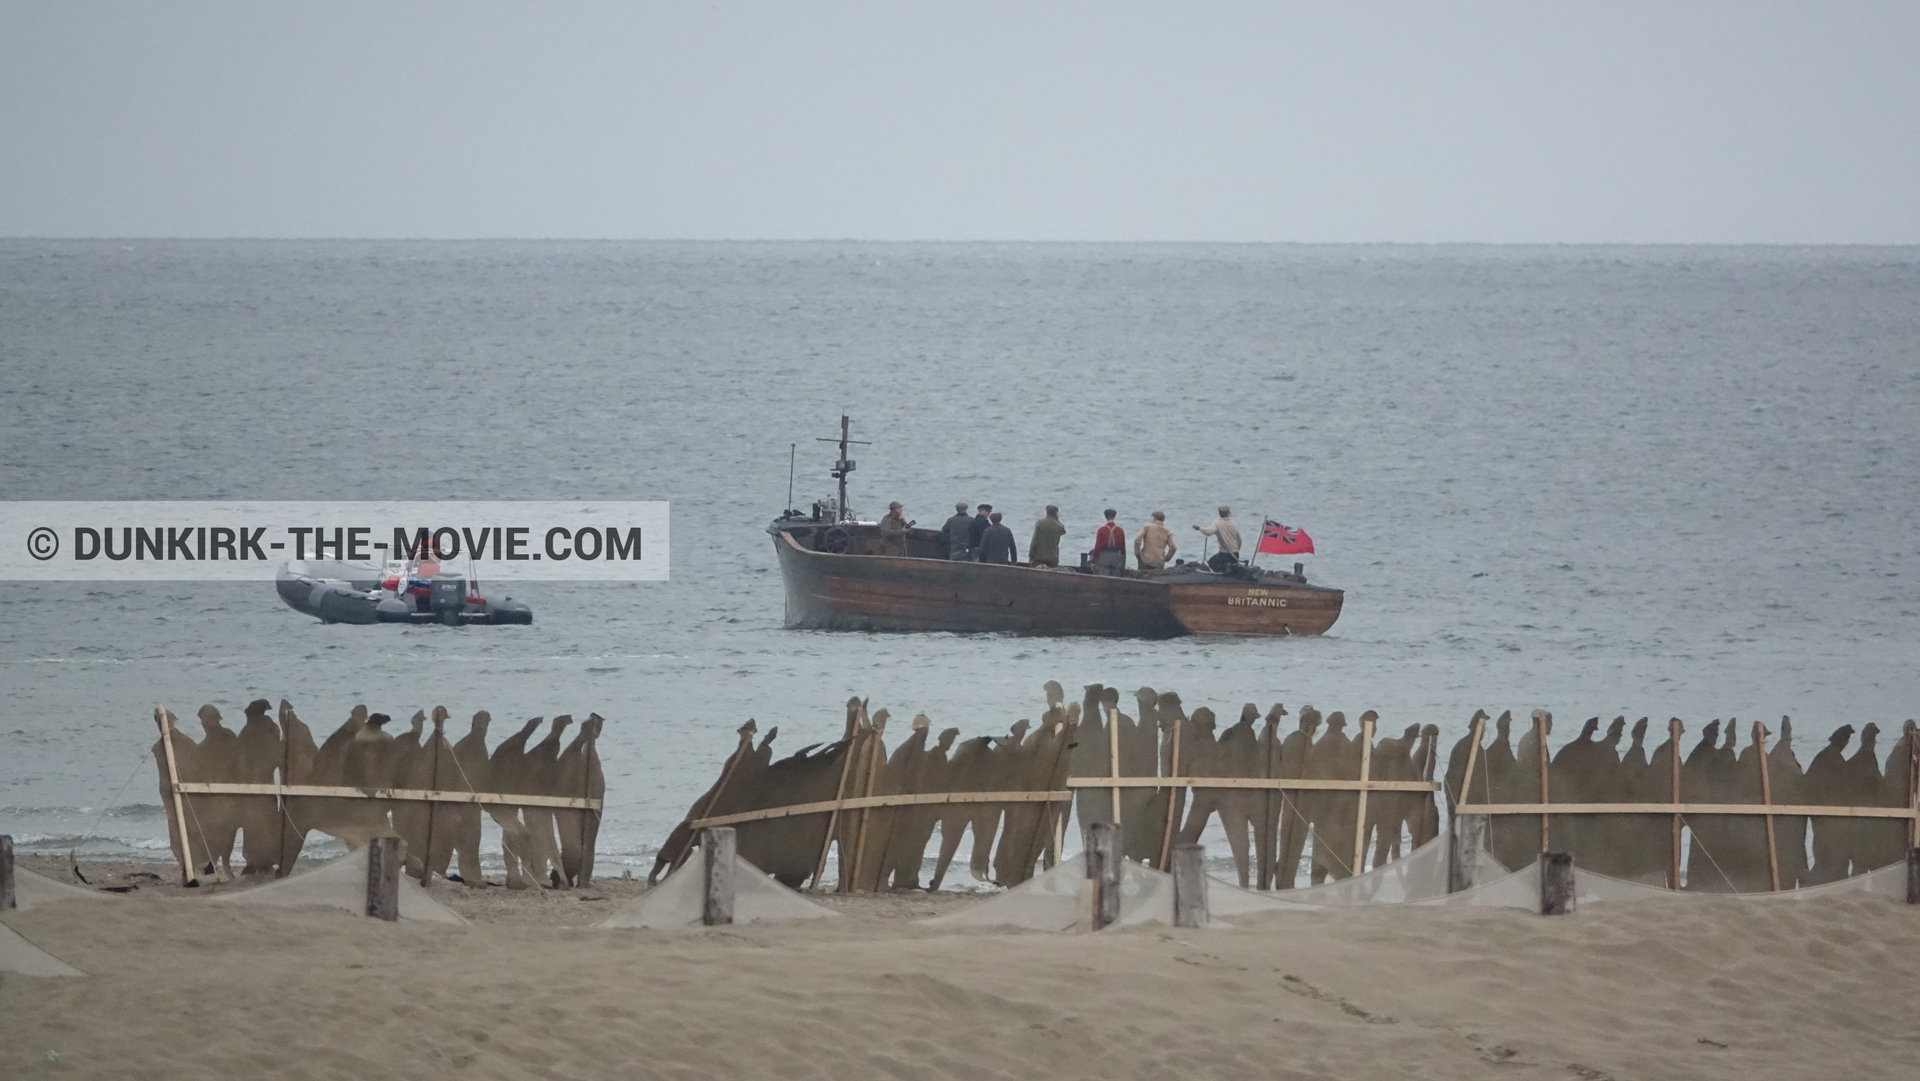 Fotos con barco, decoración, playa,  durante el rodaje de la película Dunkerque de Nolan